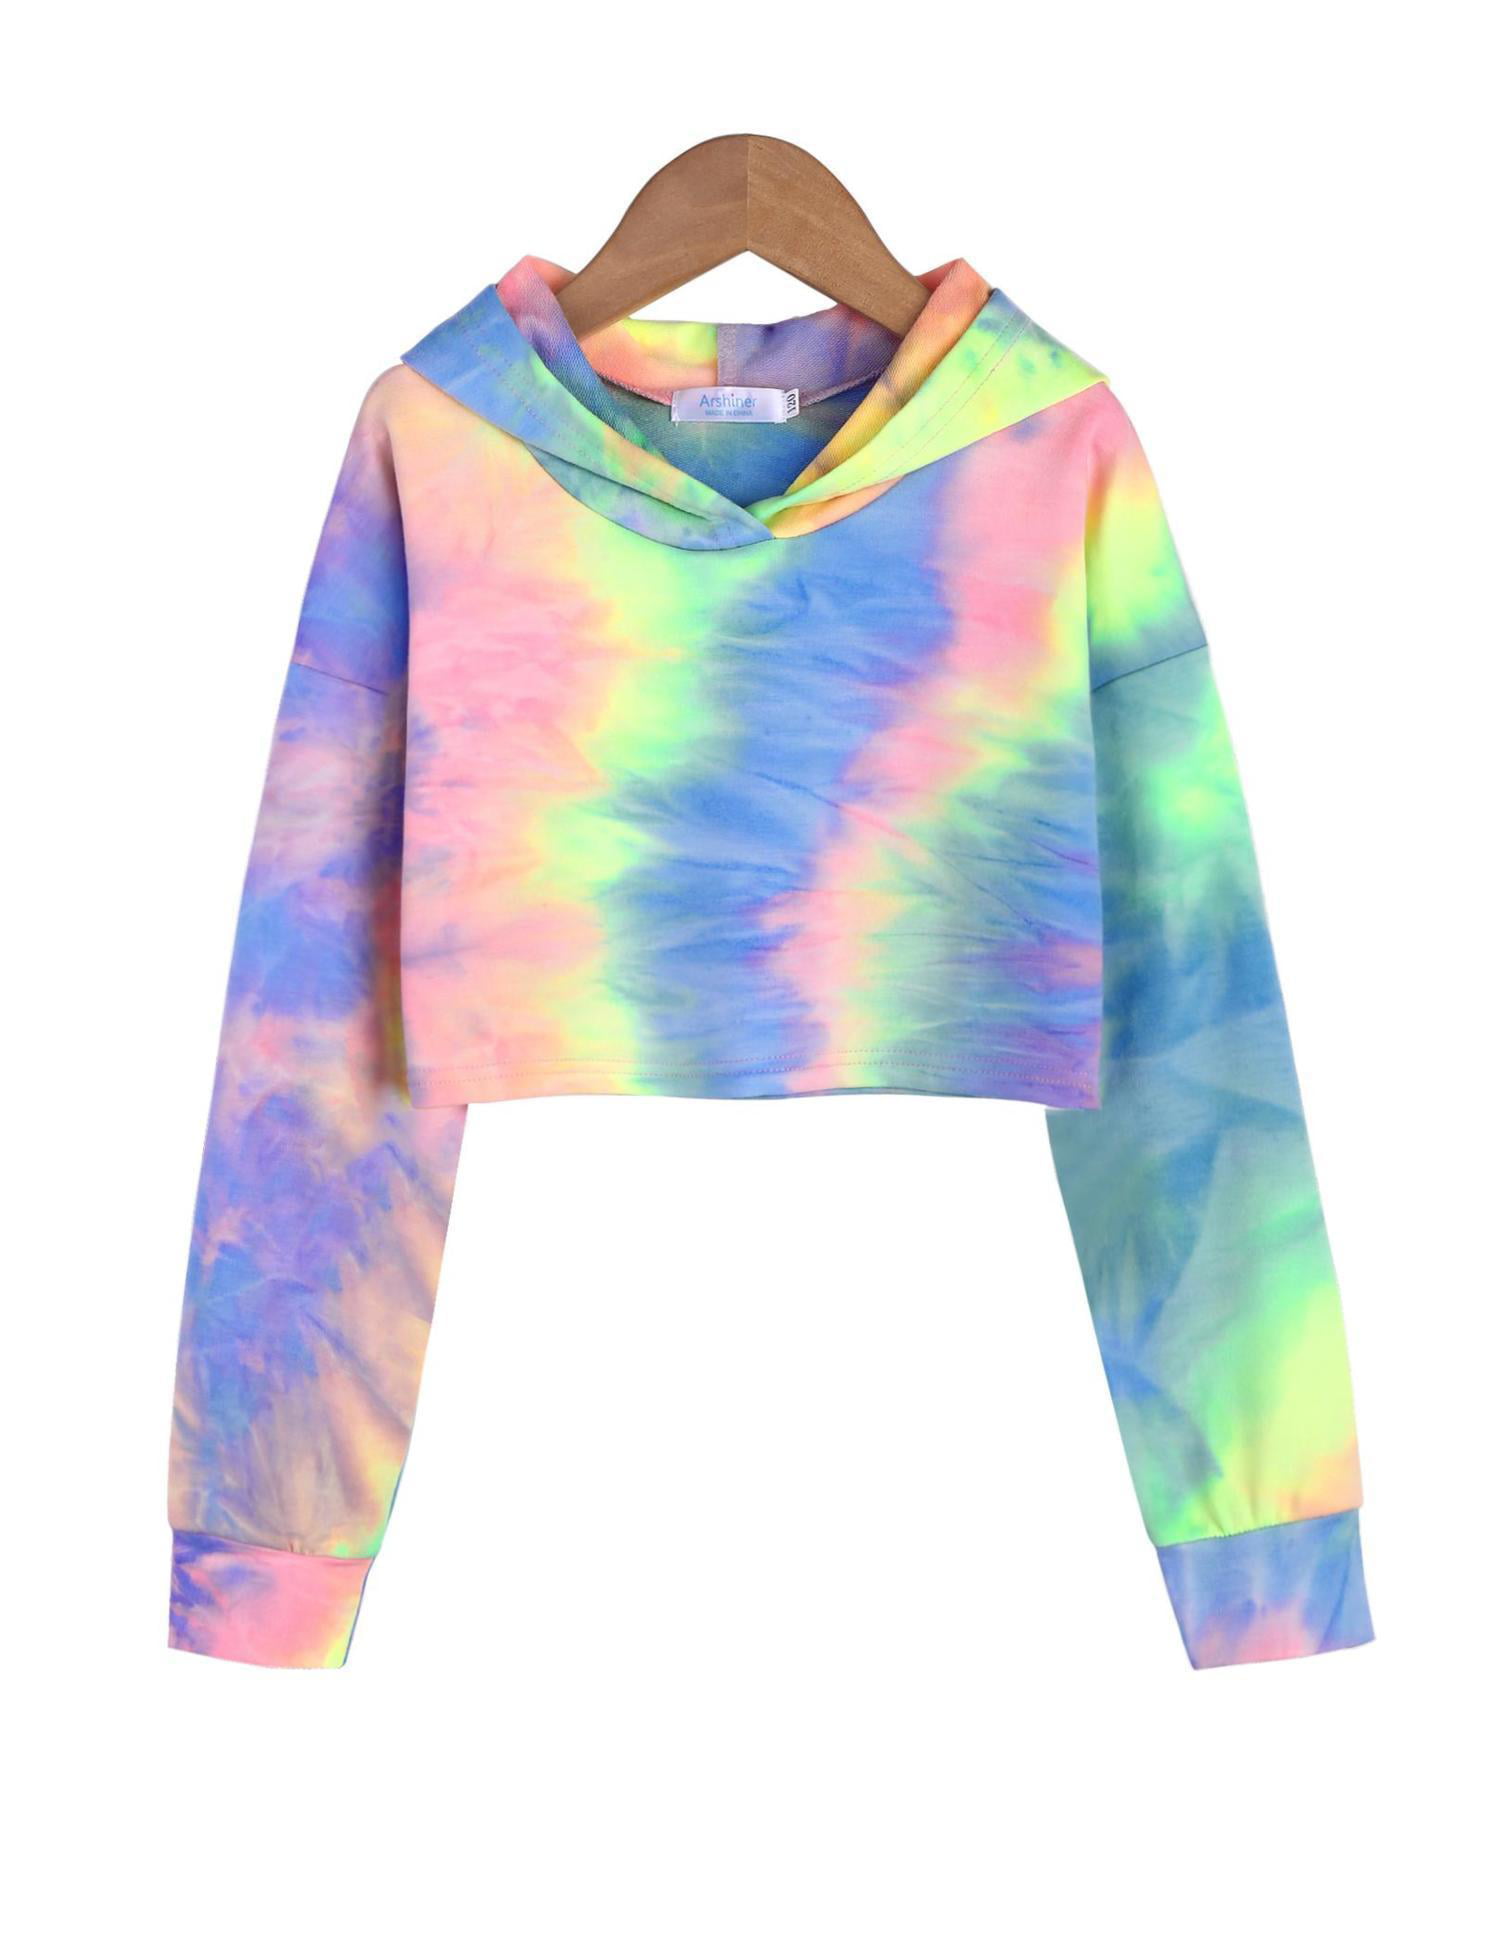 Arshiner Girls Crop Tops Tie-Dye Hoodies Kids Long Sleeve Pullover Sweatshirts 